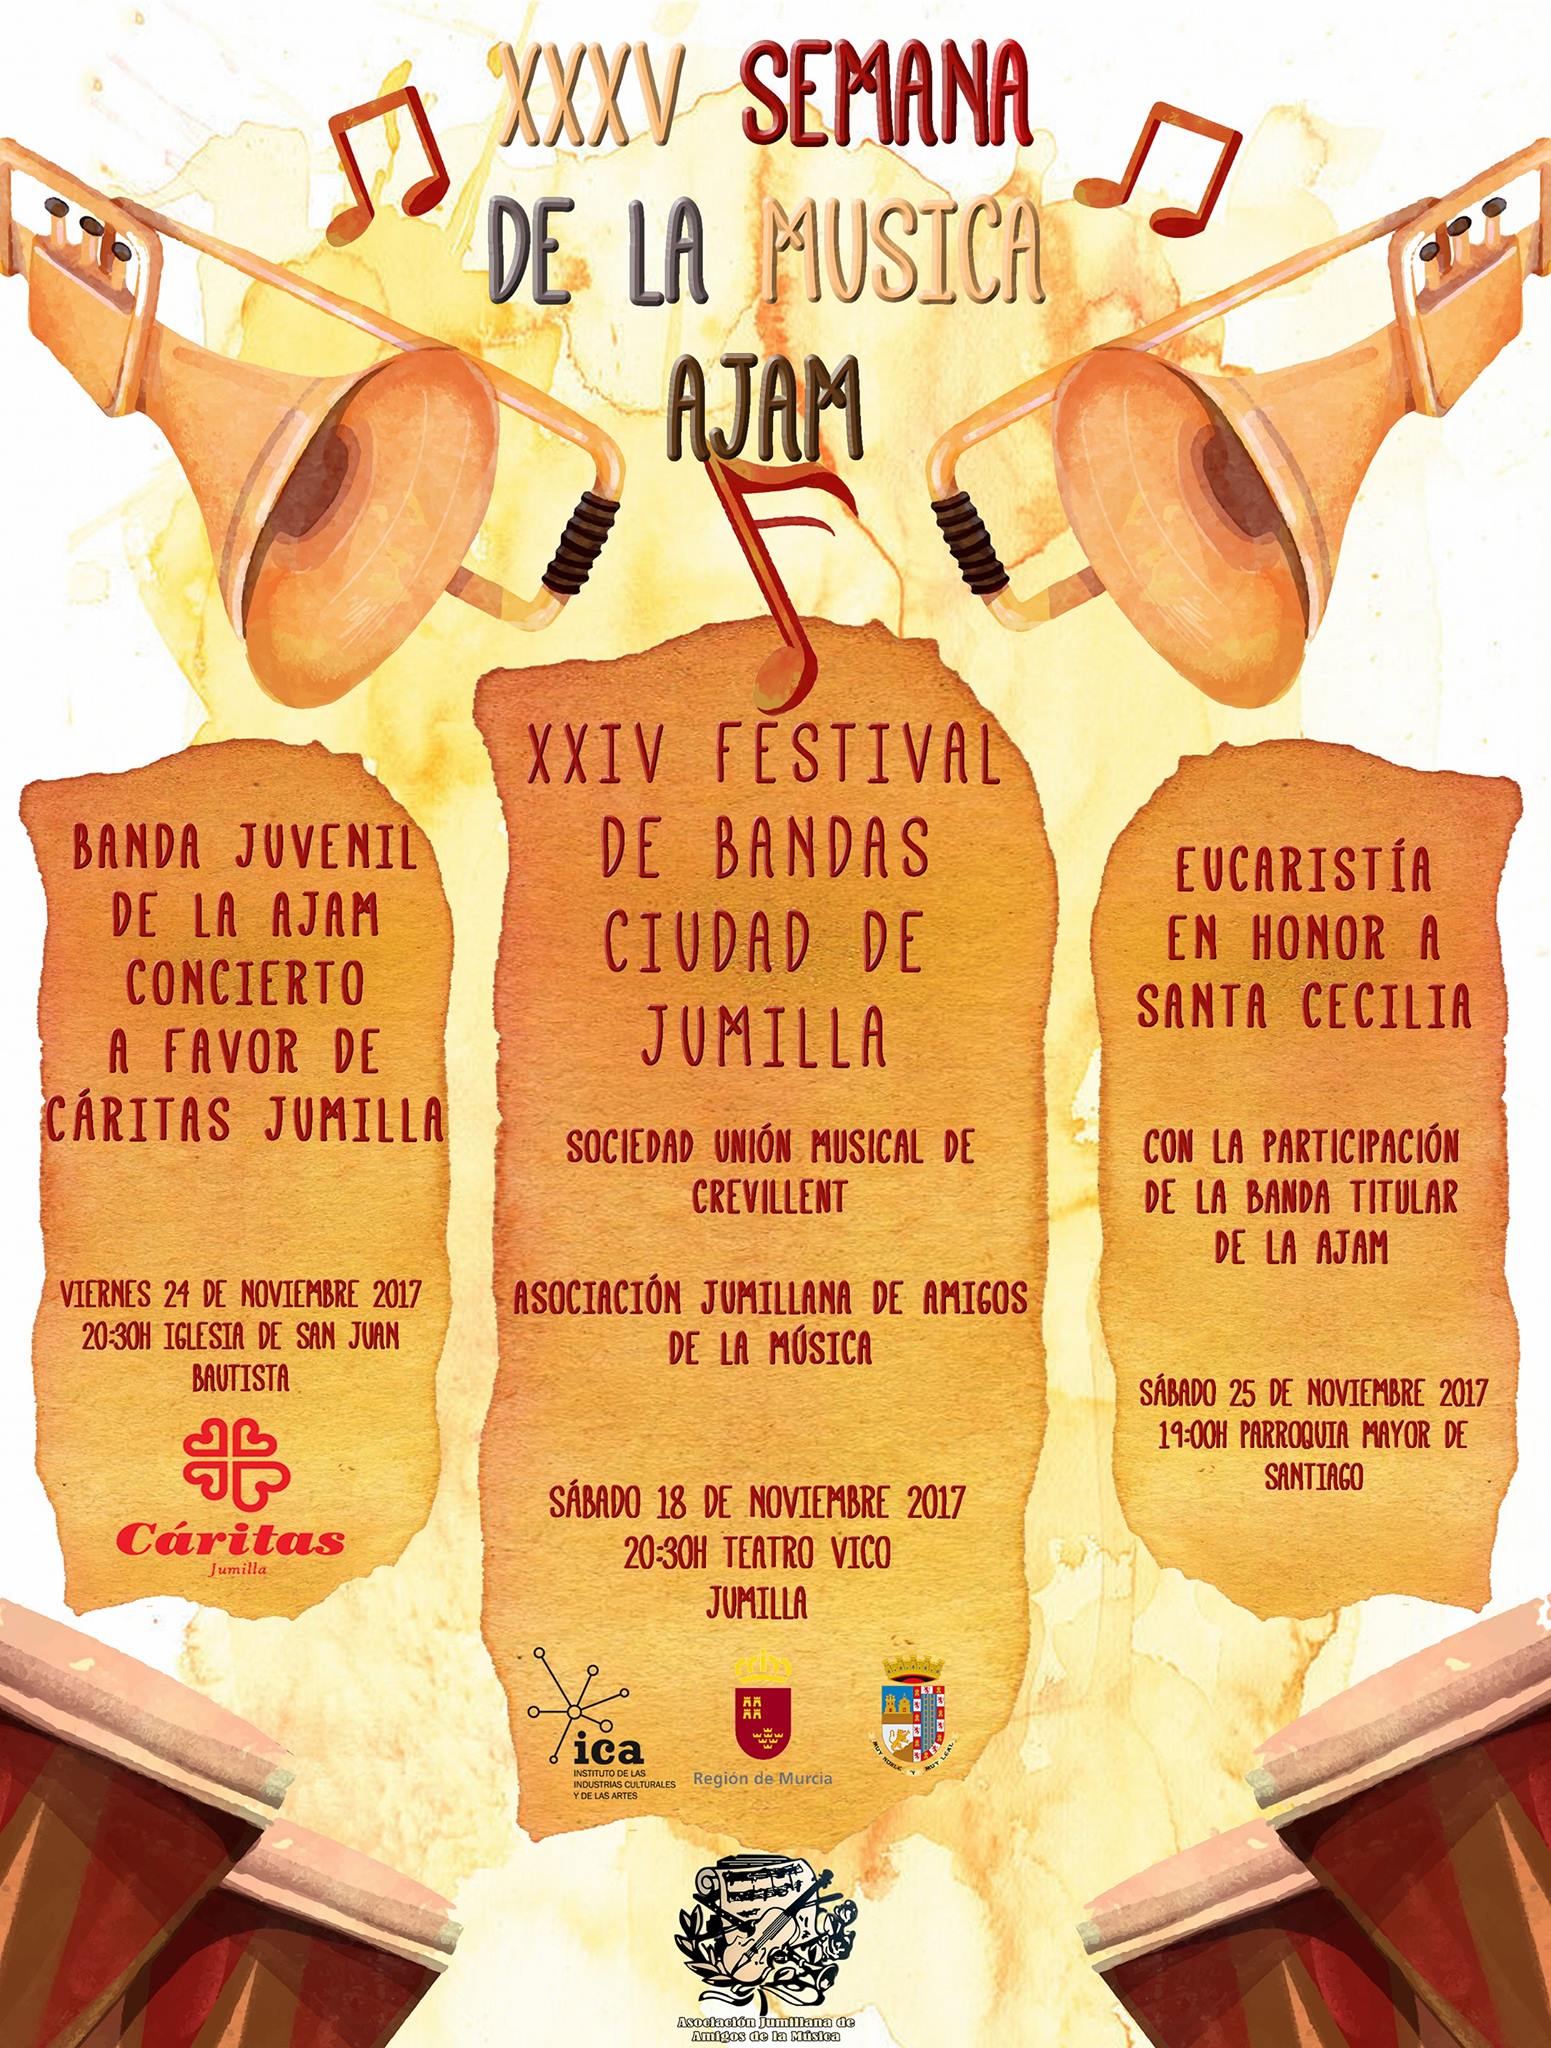 Hoy continúan los actos de la XXXV Semana de la Música en honor a Santa Cecilia que organiza la Asociación Jumillana Amigos de la Música